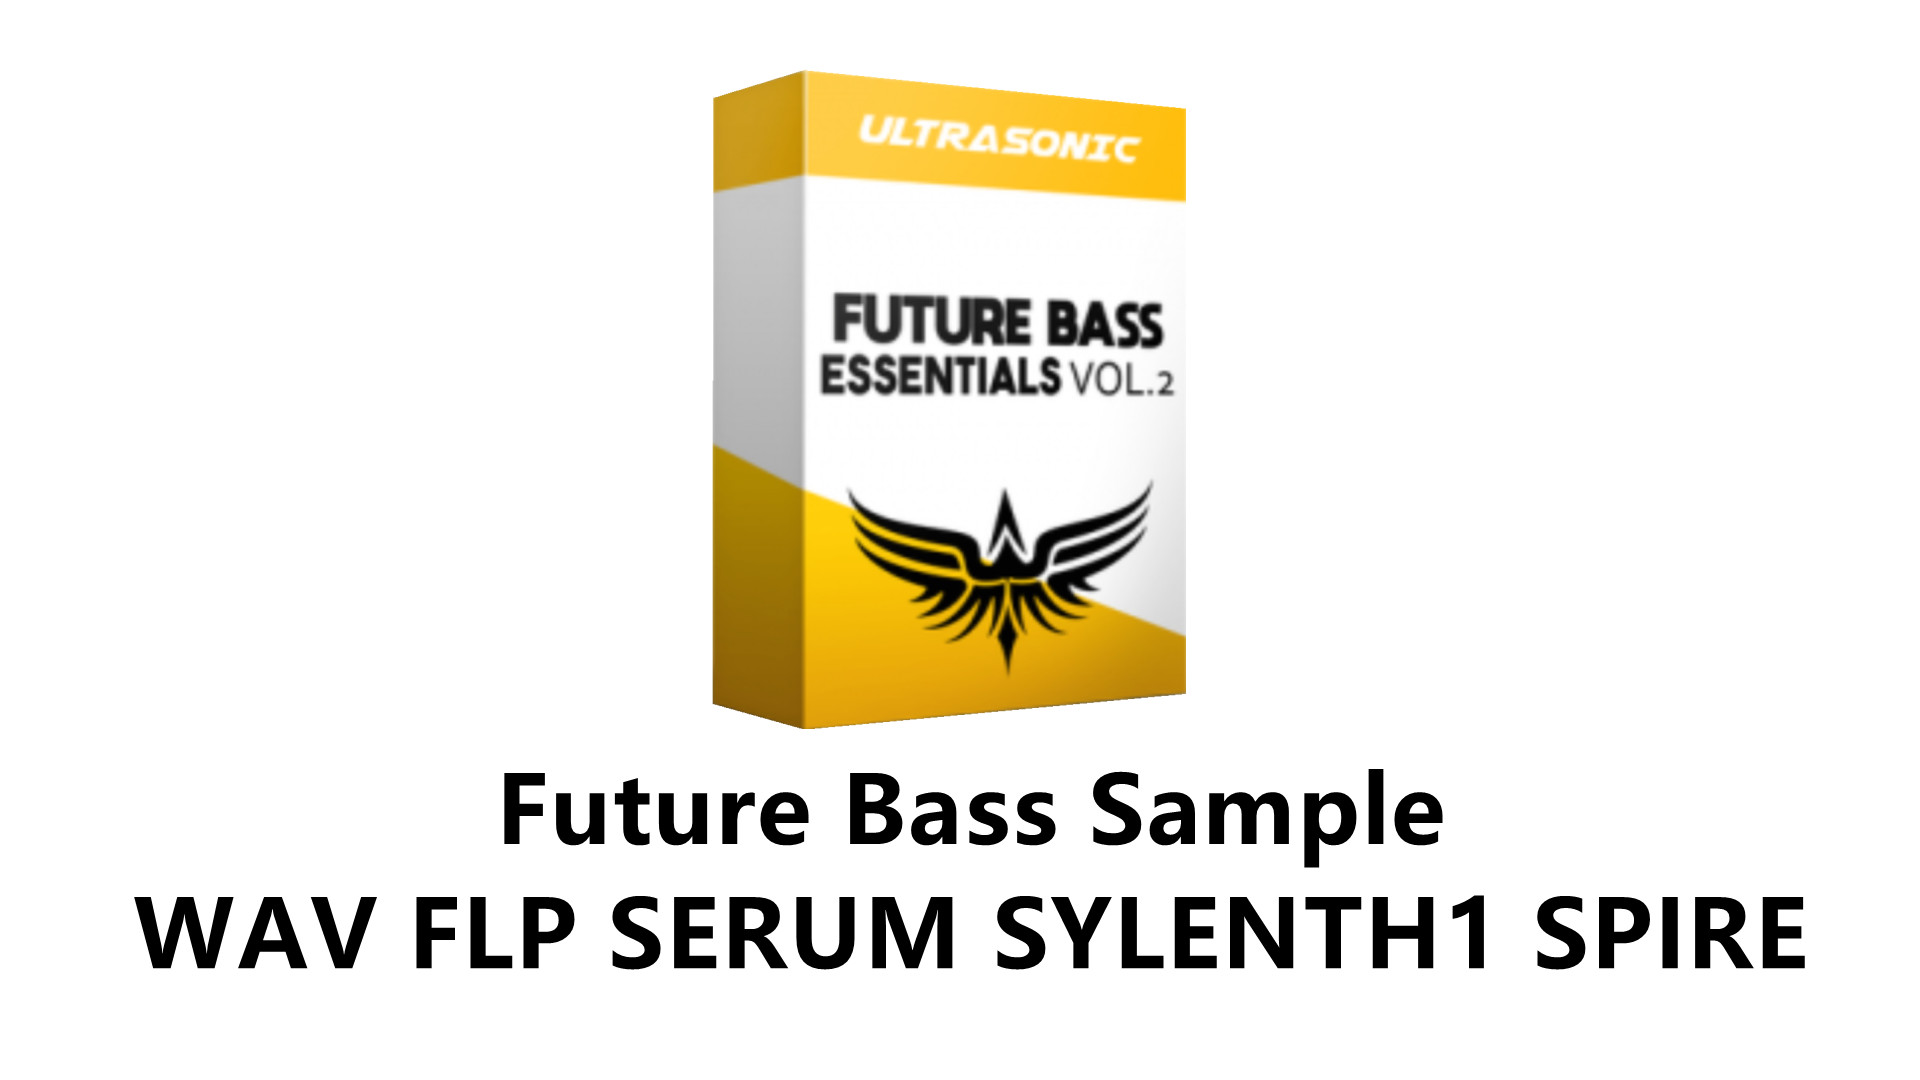 【采样包\FutureBass】Future Bass 风格采样包 Sample Pack WAV FLP SERUM SYLENTH1 SPIRE